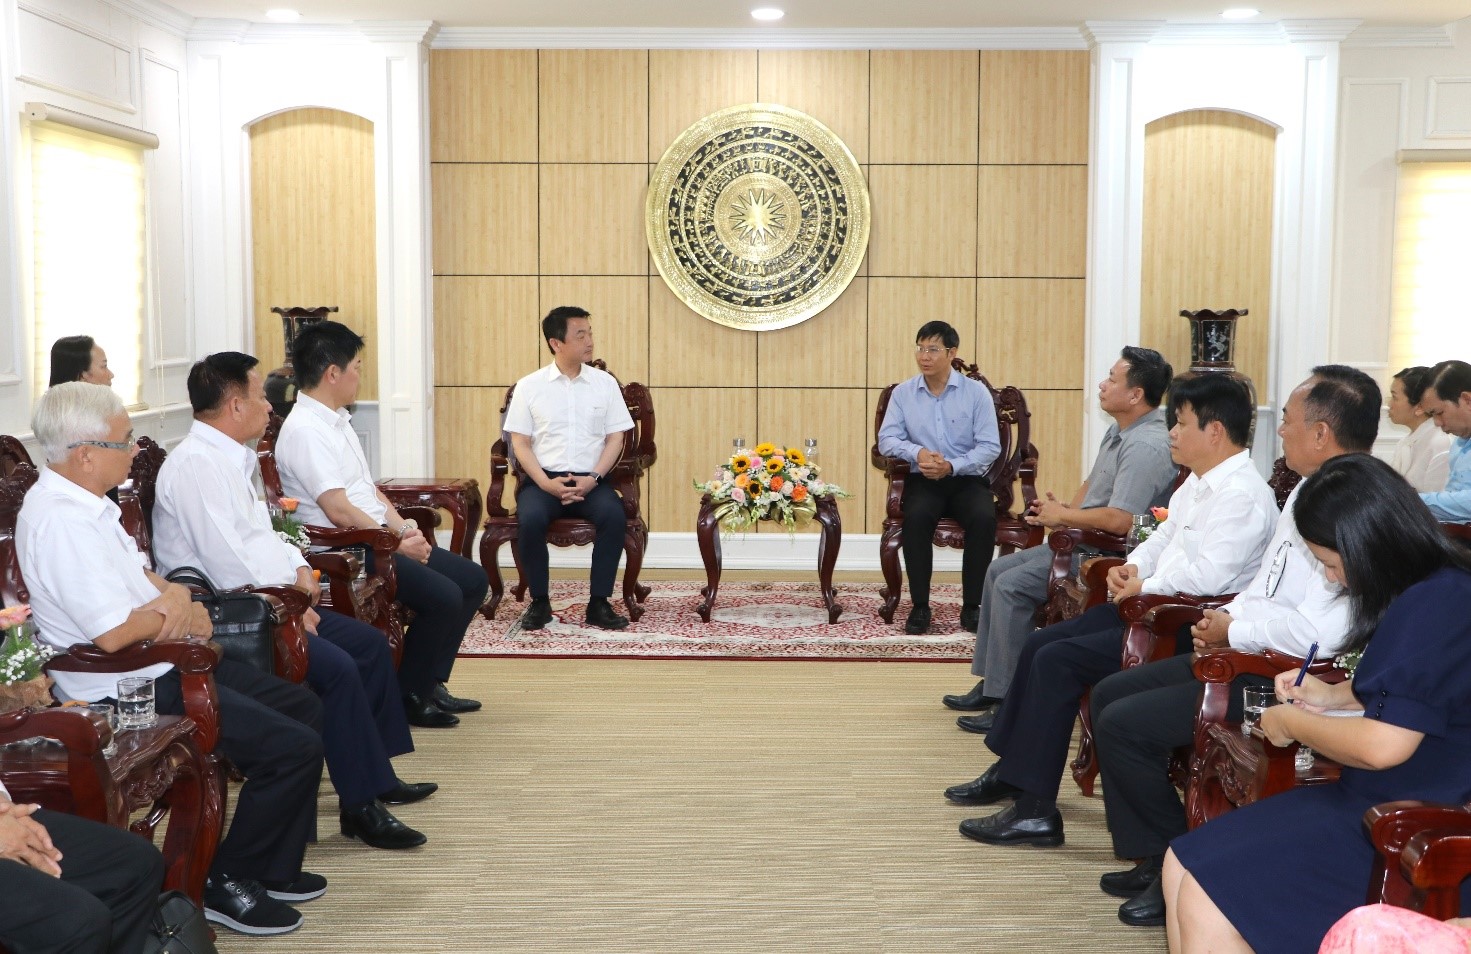 Đồng chí Nguyễn Thành Tâm -  Bí thư Tỉnh ủy tiếp chào xã giao đoàn Hạ Nghị sỹ Nhật Bản